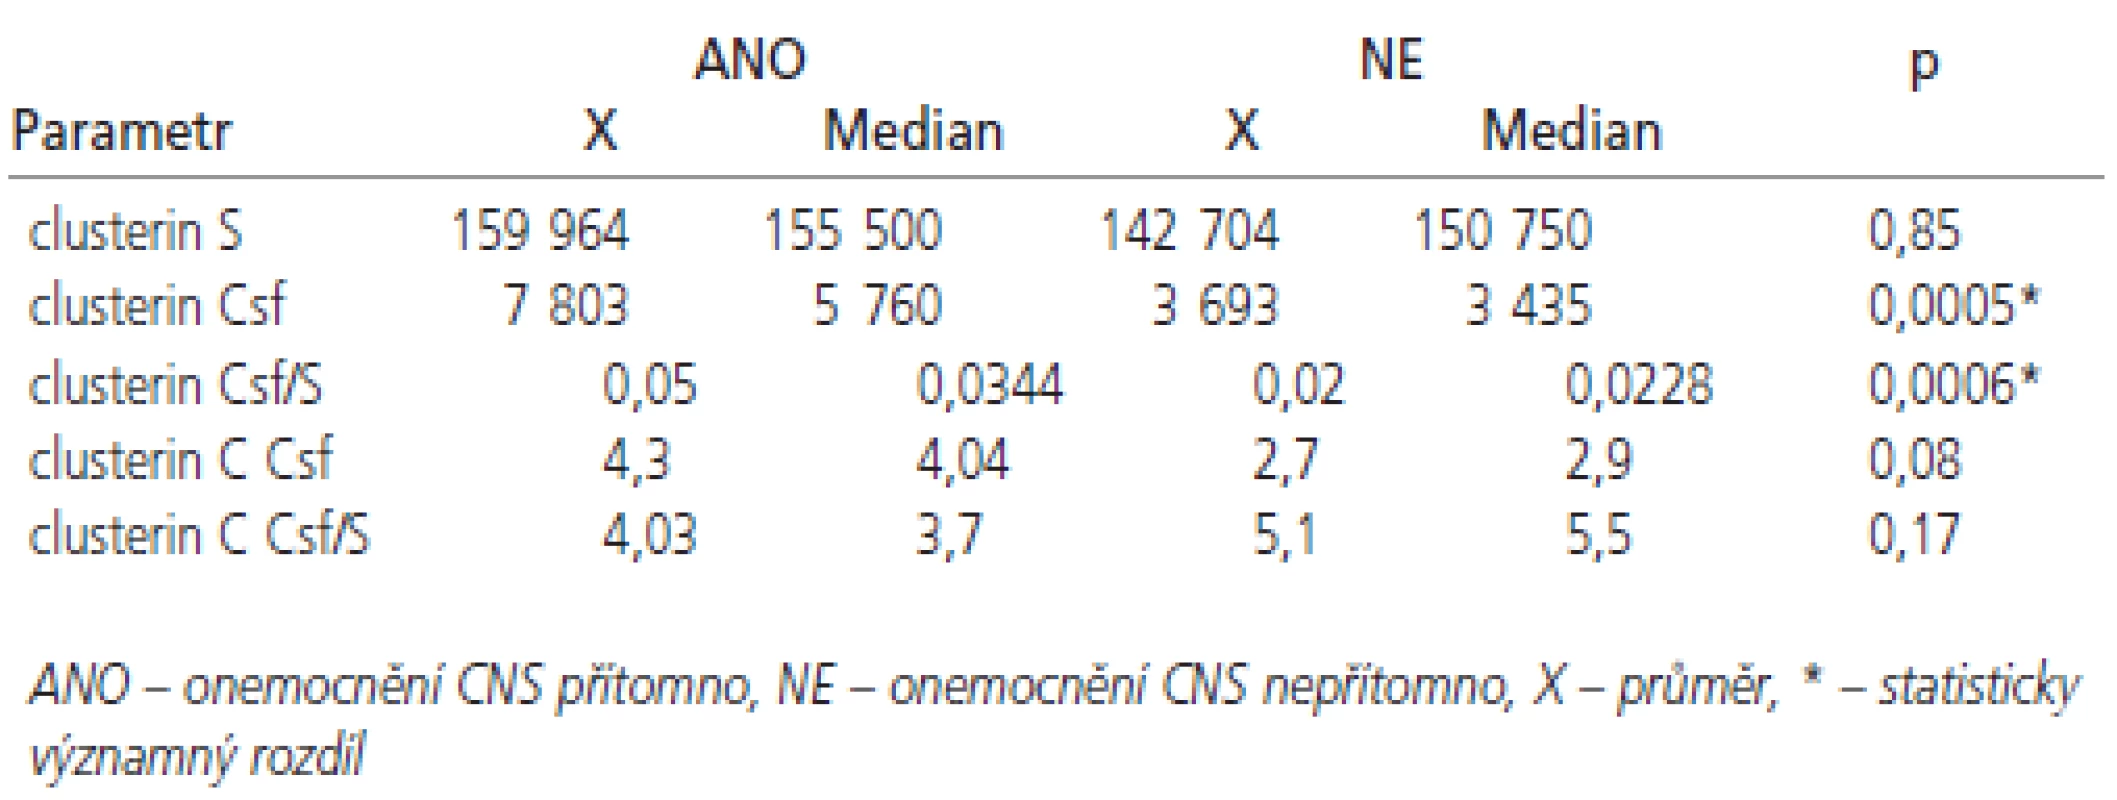 Hodnoty vybraných měřených ukazatelů podle přítomnosti onemocnění CNS (ANO/NE).